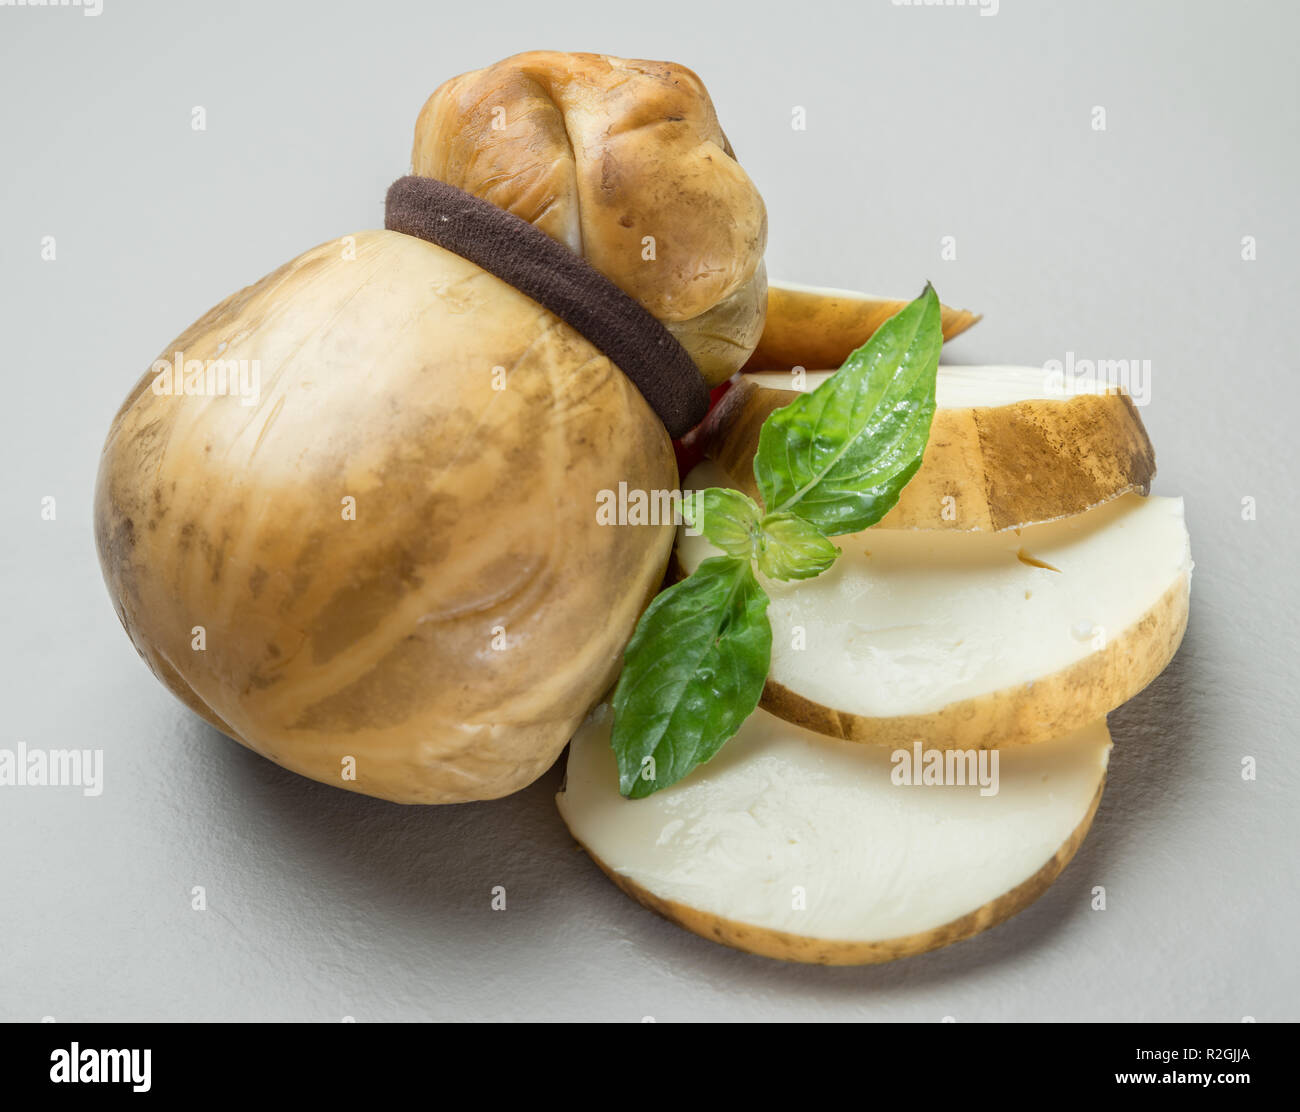 Traditionelle italienische geräuchert Scamorza Käse mit - Hintergrund Alamy Stockfotografie auf Kräutern grauem